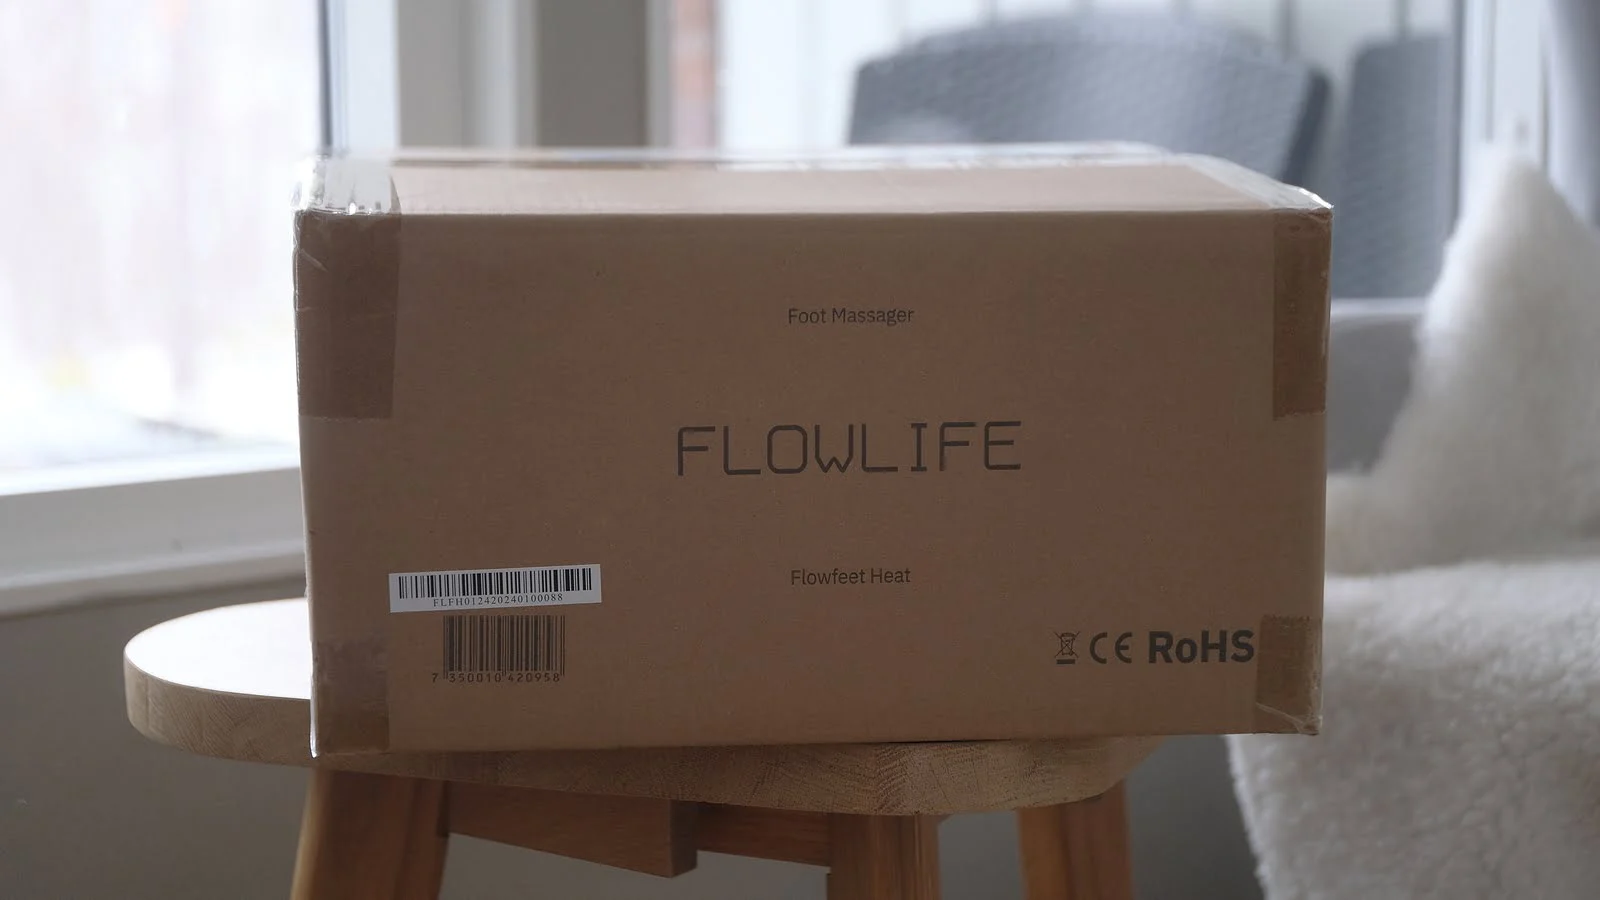 Flowfeet Heat – Recension av fotmassage maskinen från Flowlife 1